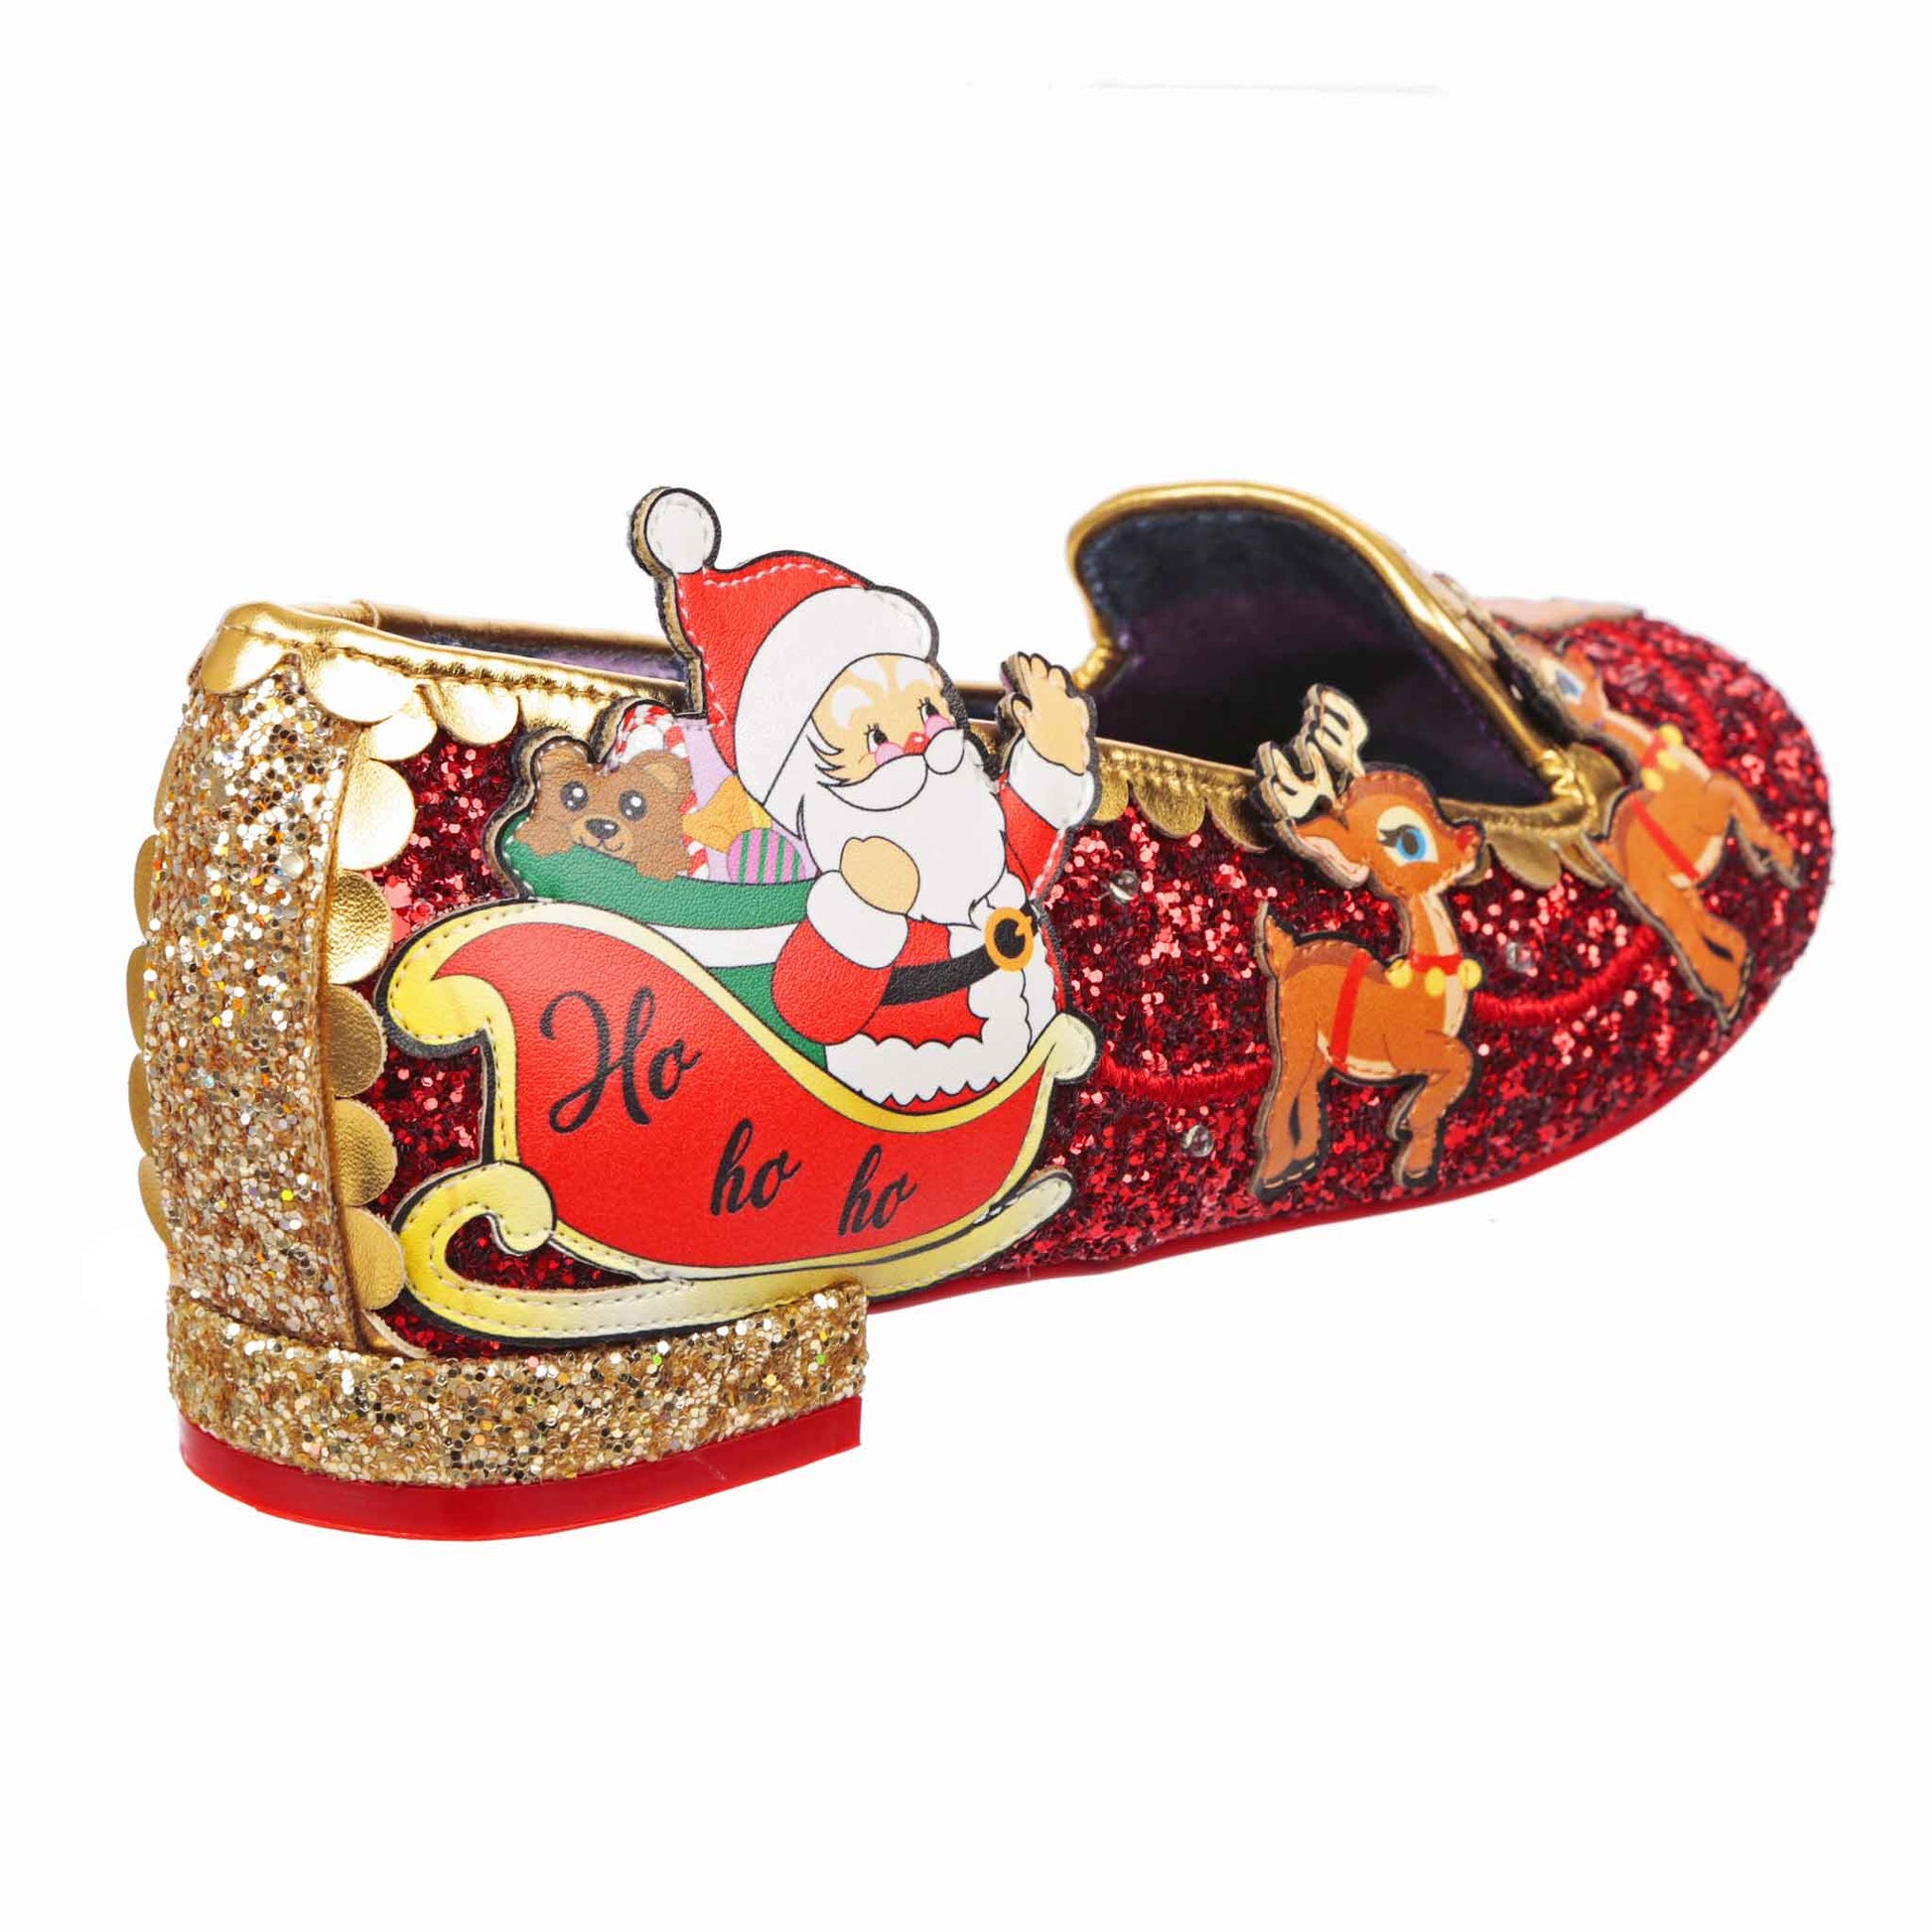 Santas Sleigh - Rockamilly-Shoes-Vintage